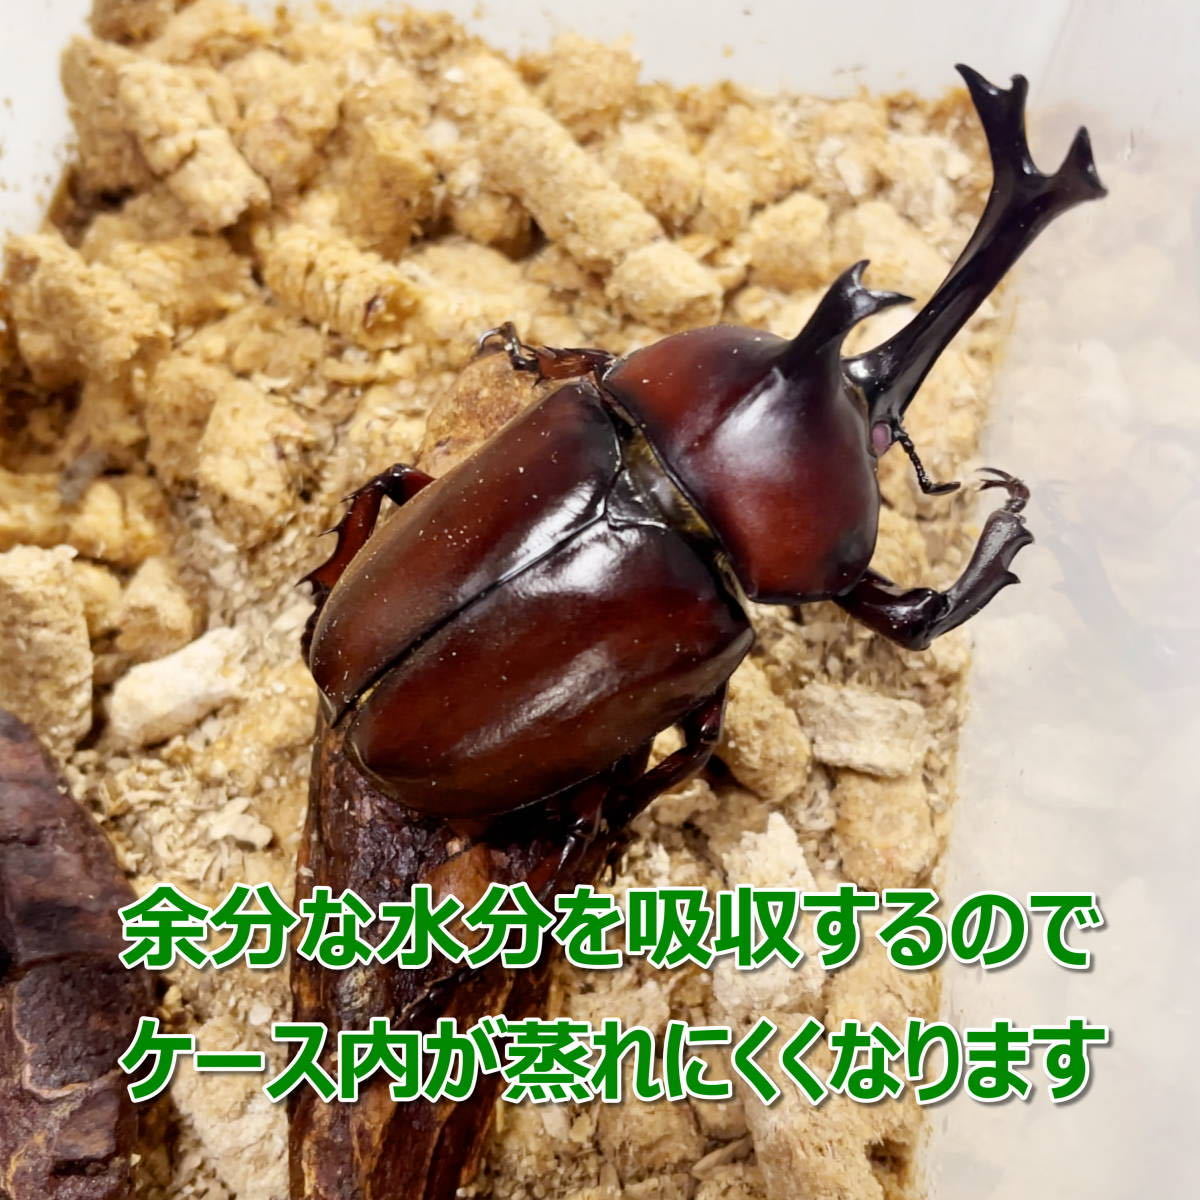 [RK] взрослое насекомое для коврик 1kg 3 шт насекомое pe let жук-носорог * рогач оптимальный!! взрослое насекомое разведение . рекомендация!